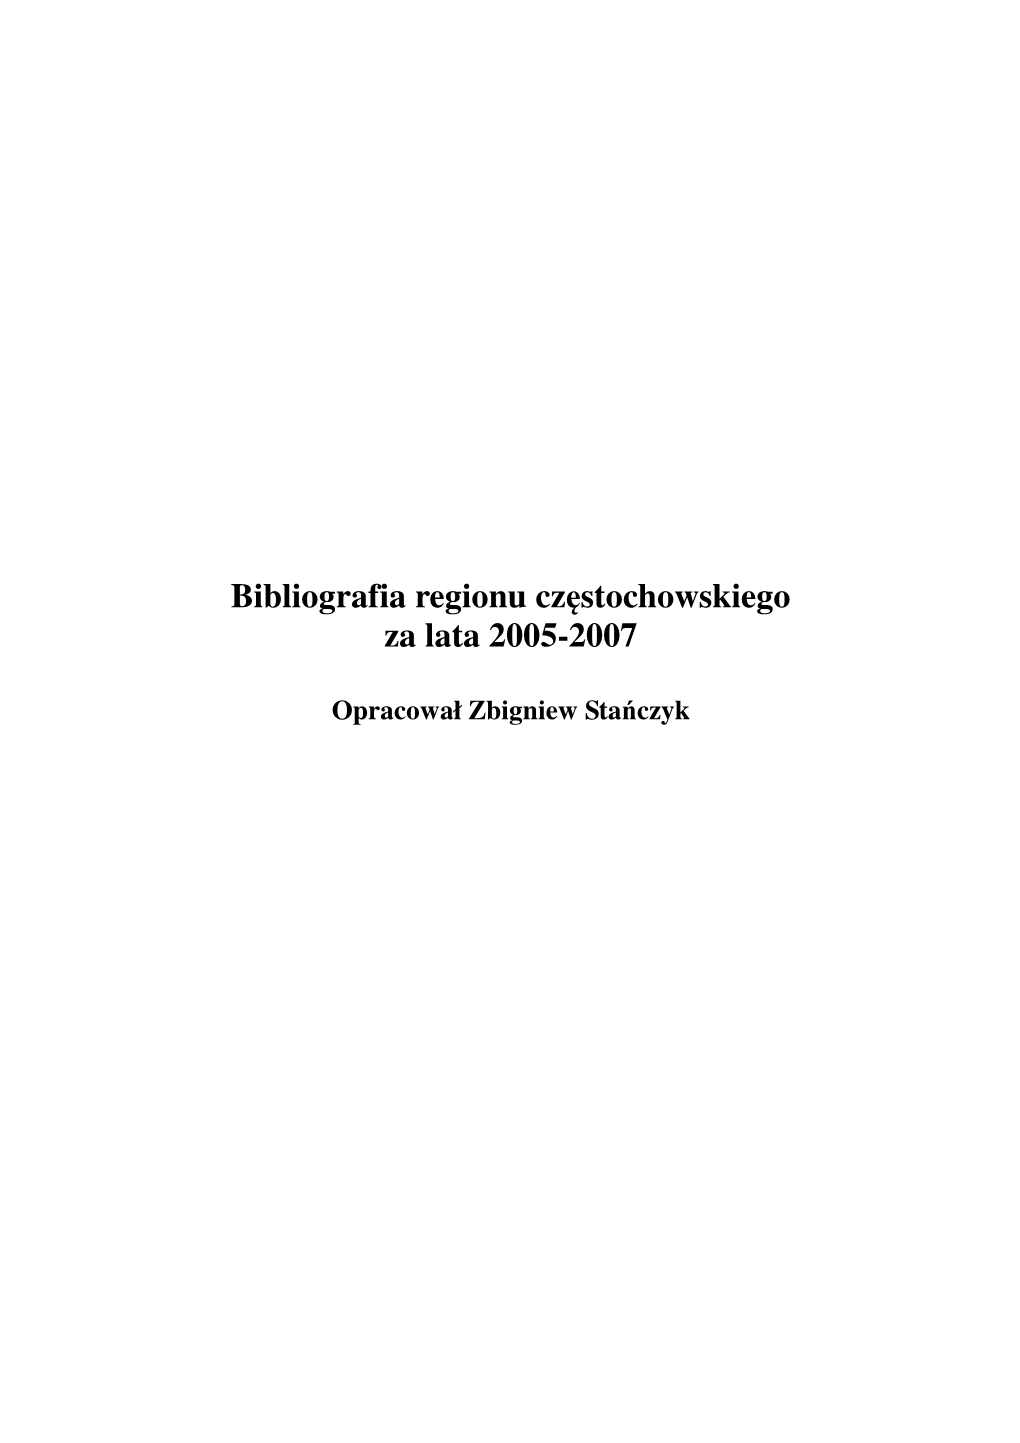 Bibliografia Regionu Częstochowskiego Za Lata 2005-2007